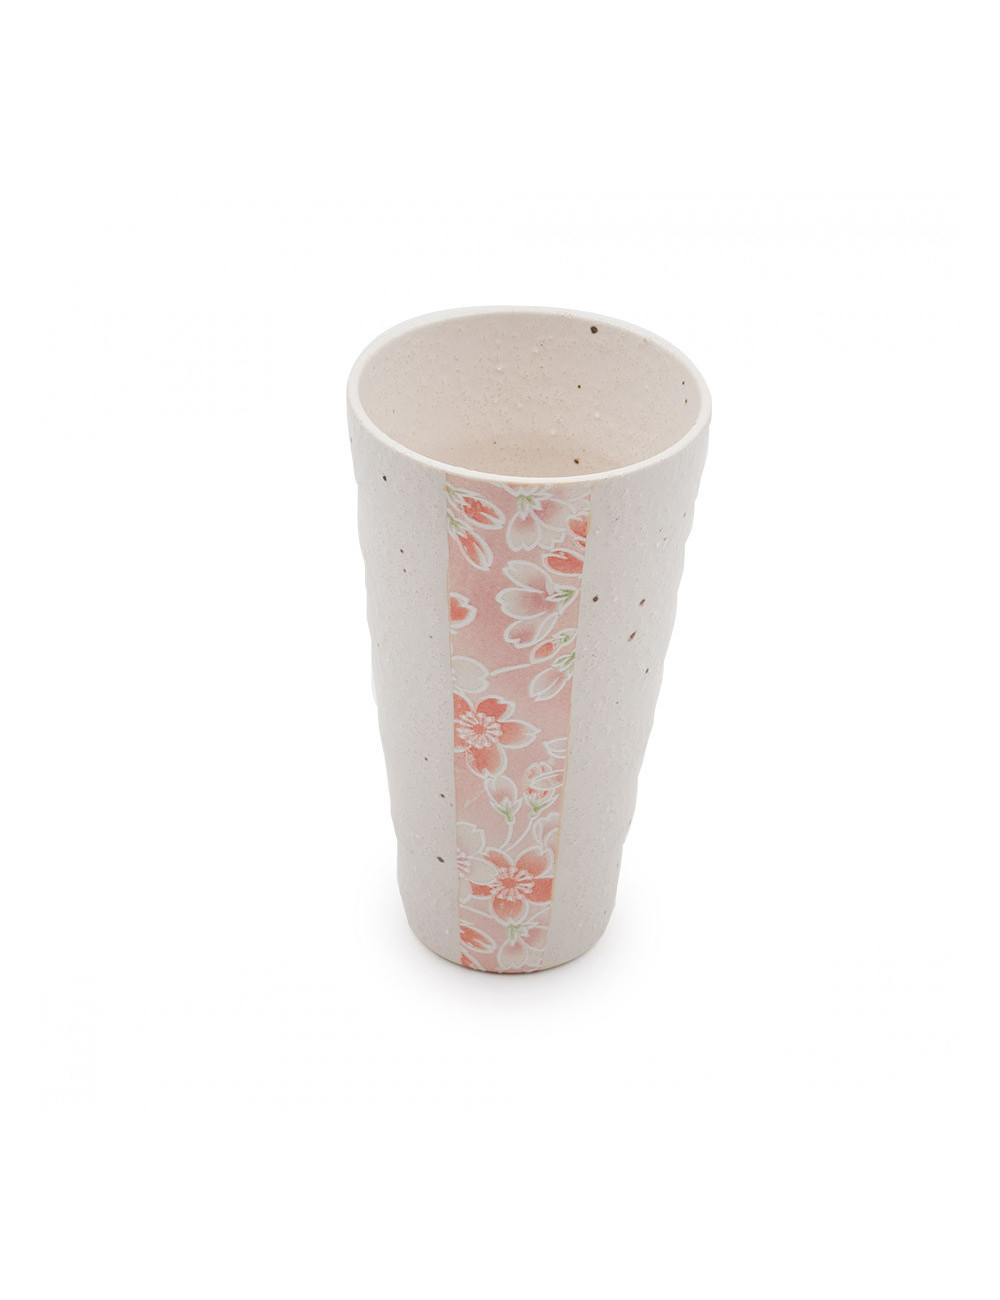 Originale Mug giapponese in ceramica porosa con fiori rosa - La Pianta del Tè Shop online